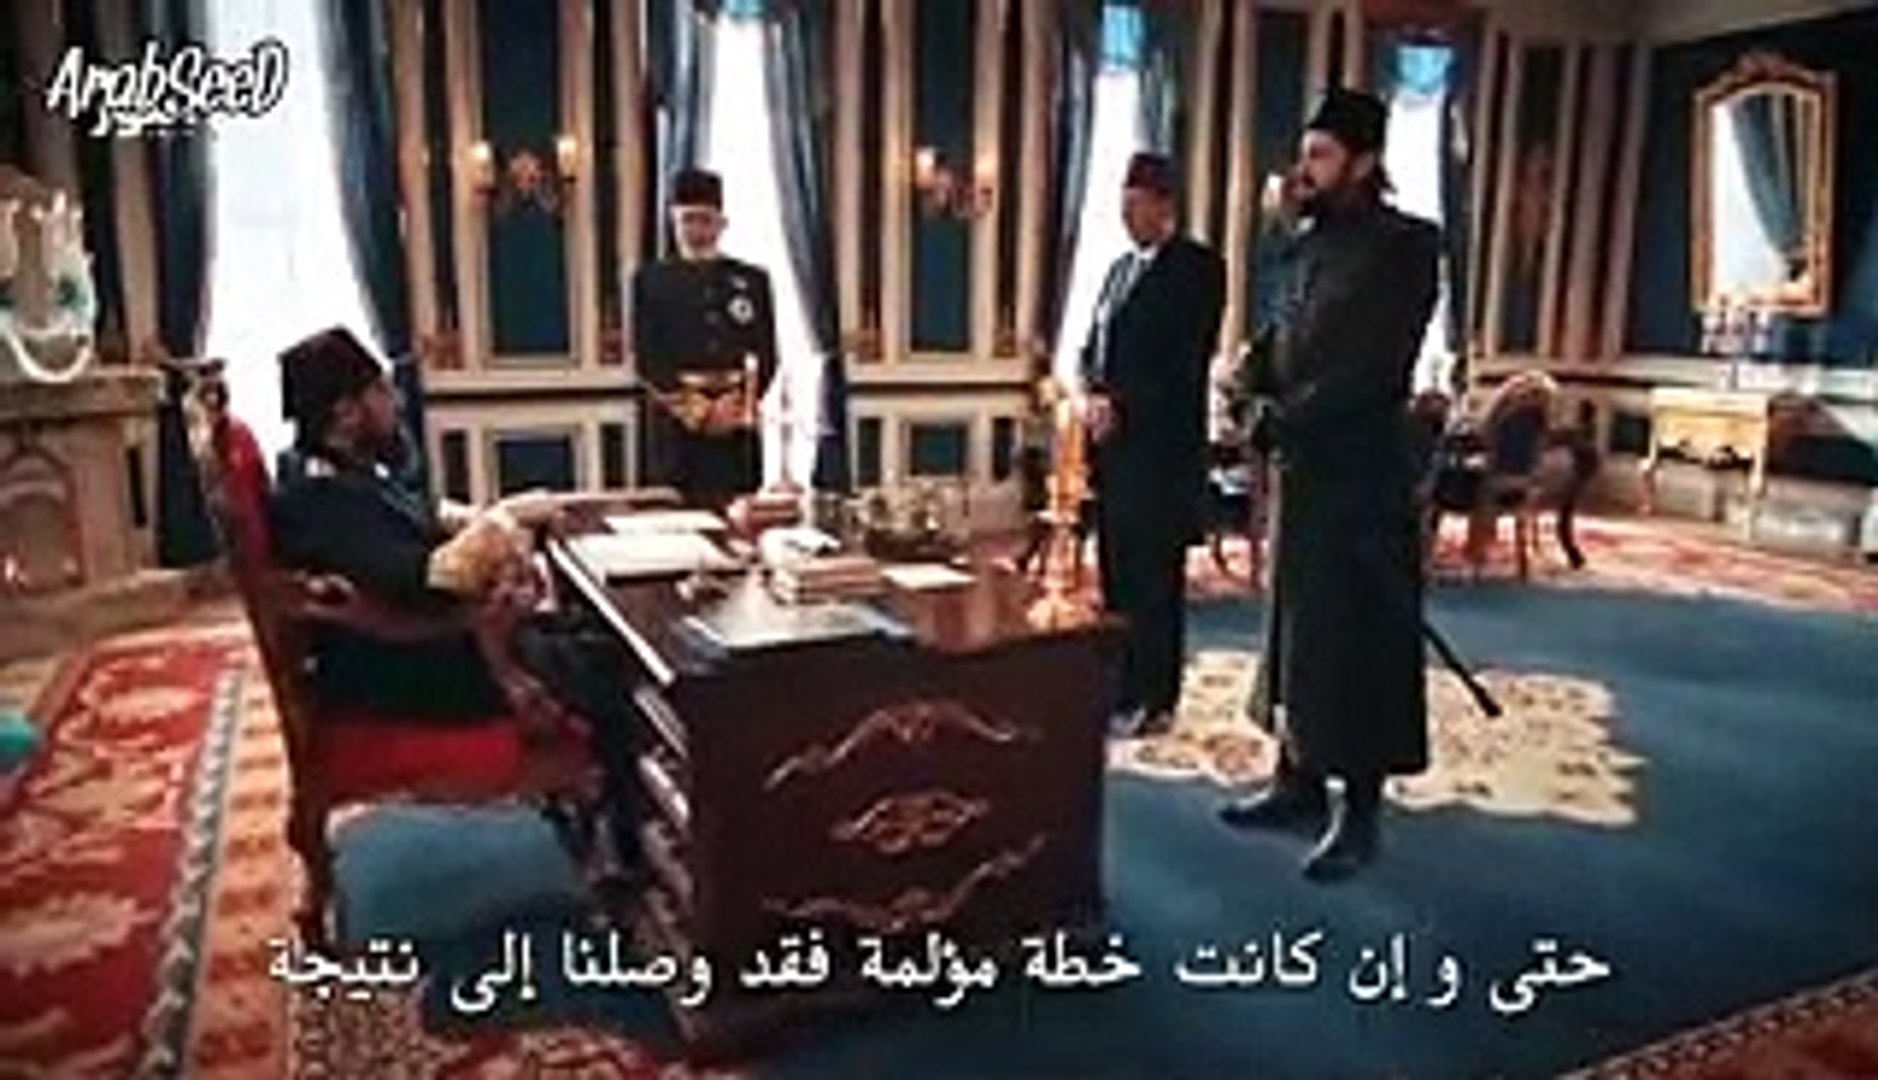 الحلقة 104 من مسلسل السلطان عبد الحميد القسم الاول الموسم الرابع فيديو Dailymotion